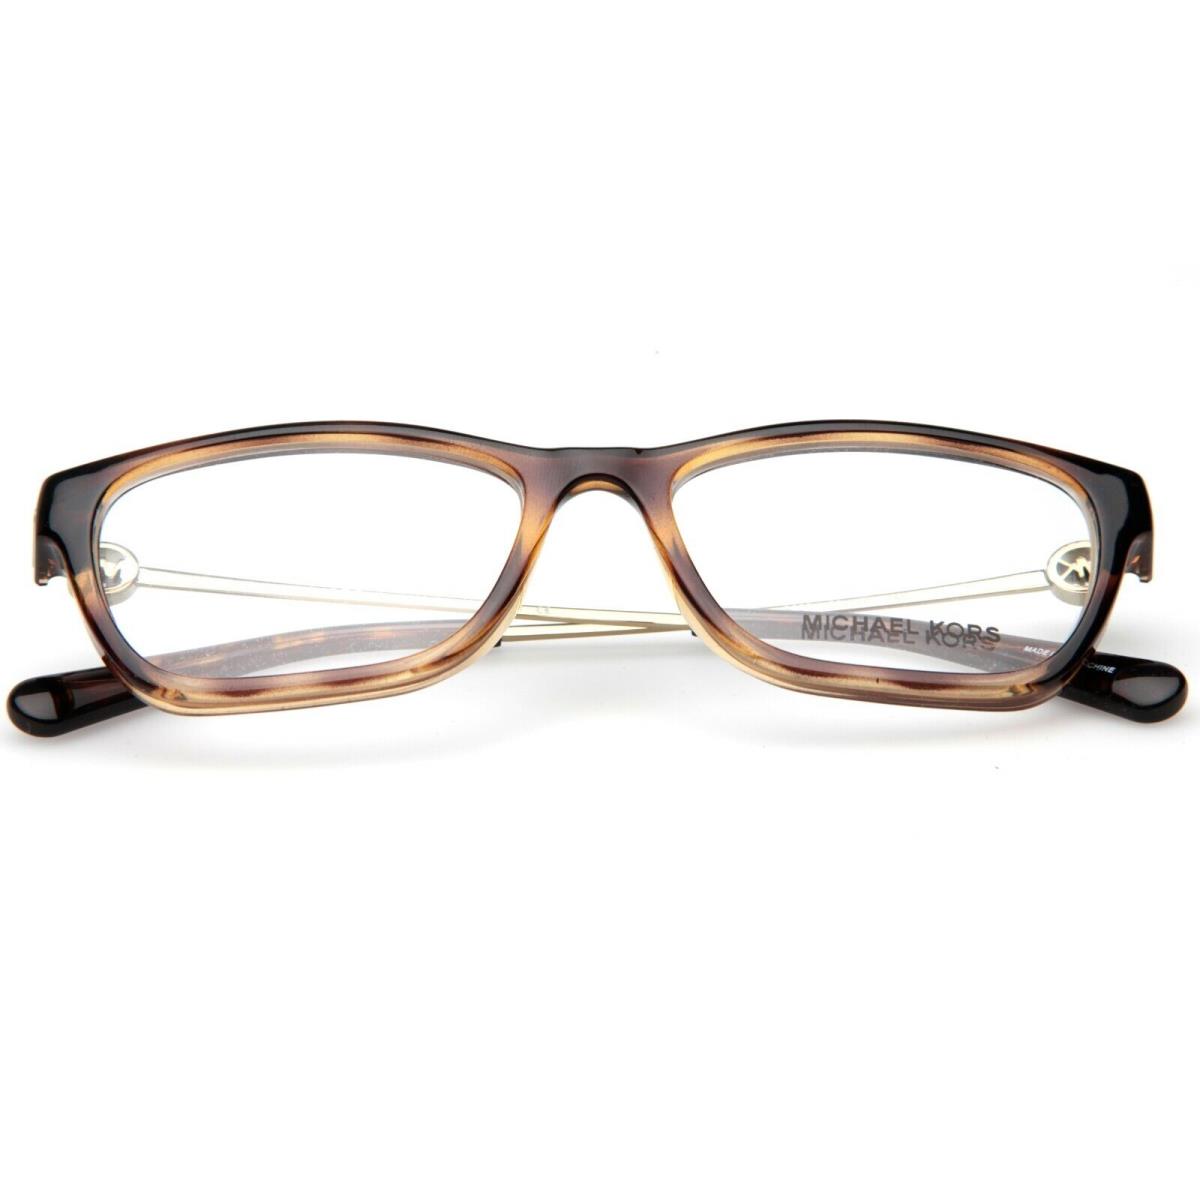 Michael Kors eyeglasses  - Frame: 5